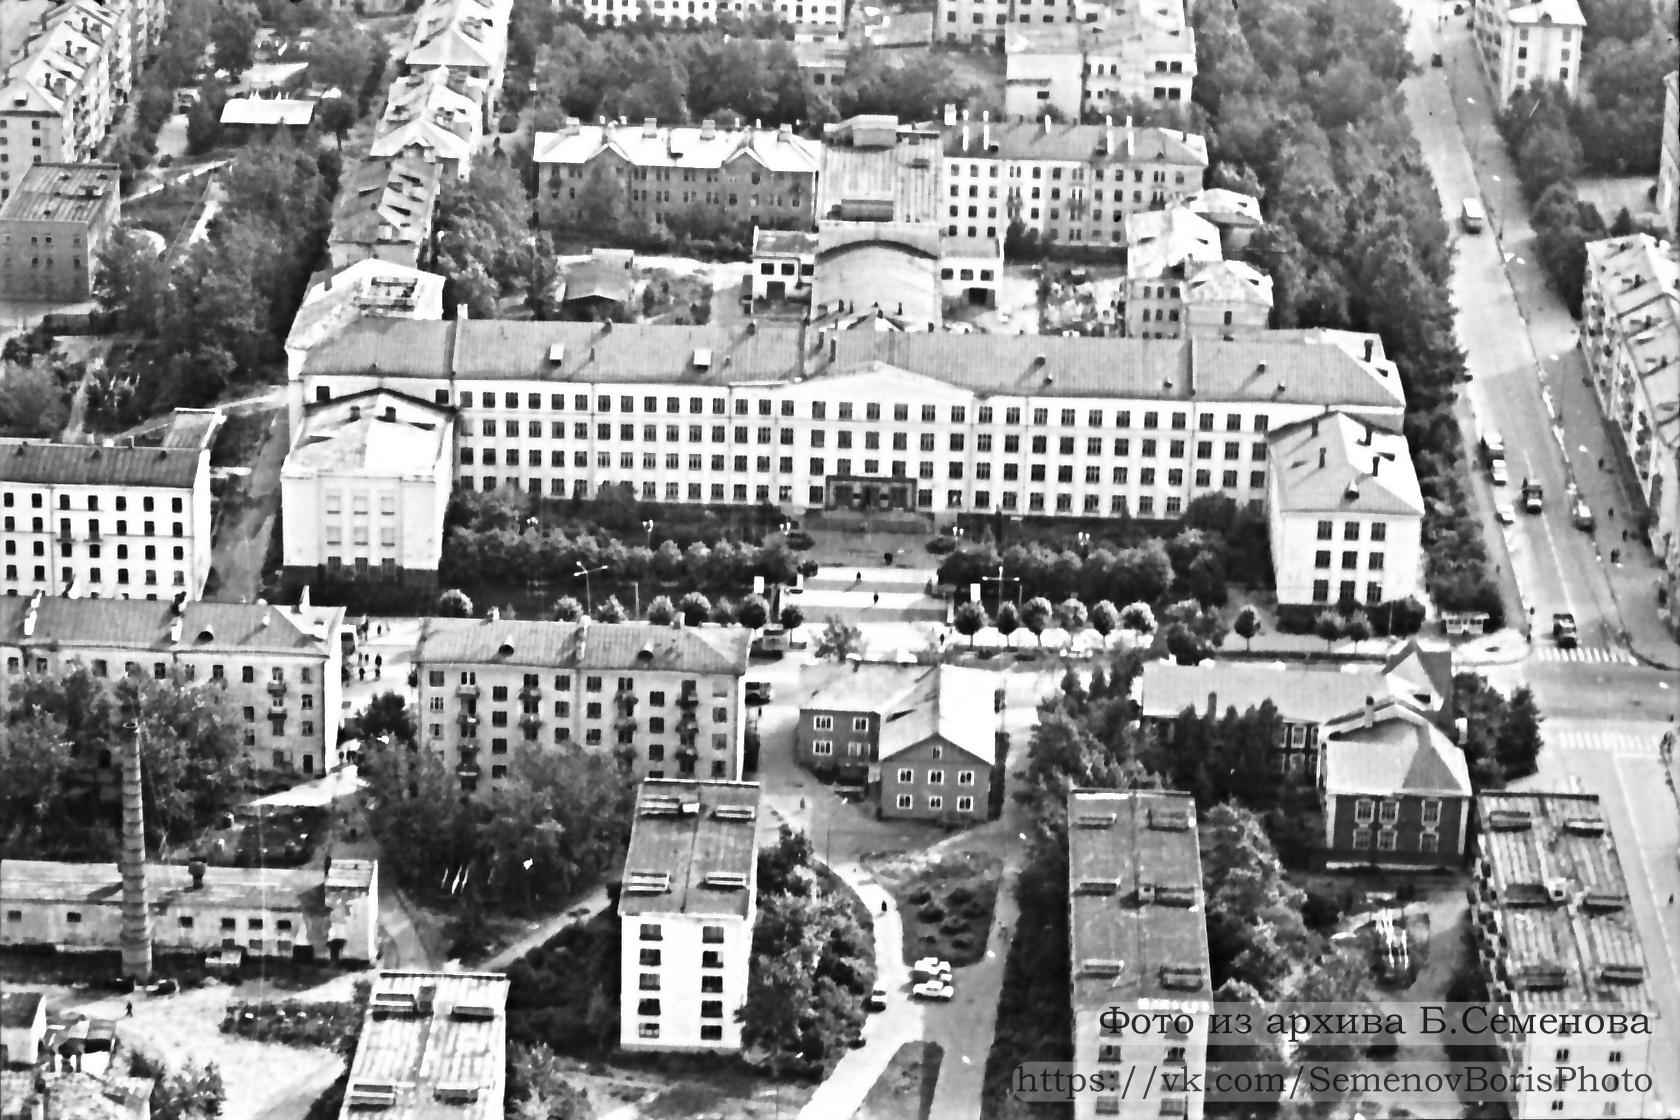 Early 1980's. Petrozavodsk. Building of Kareldrev Trust